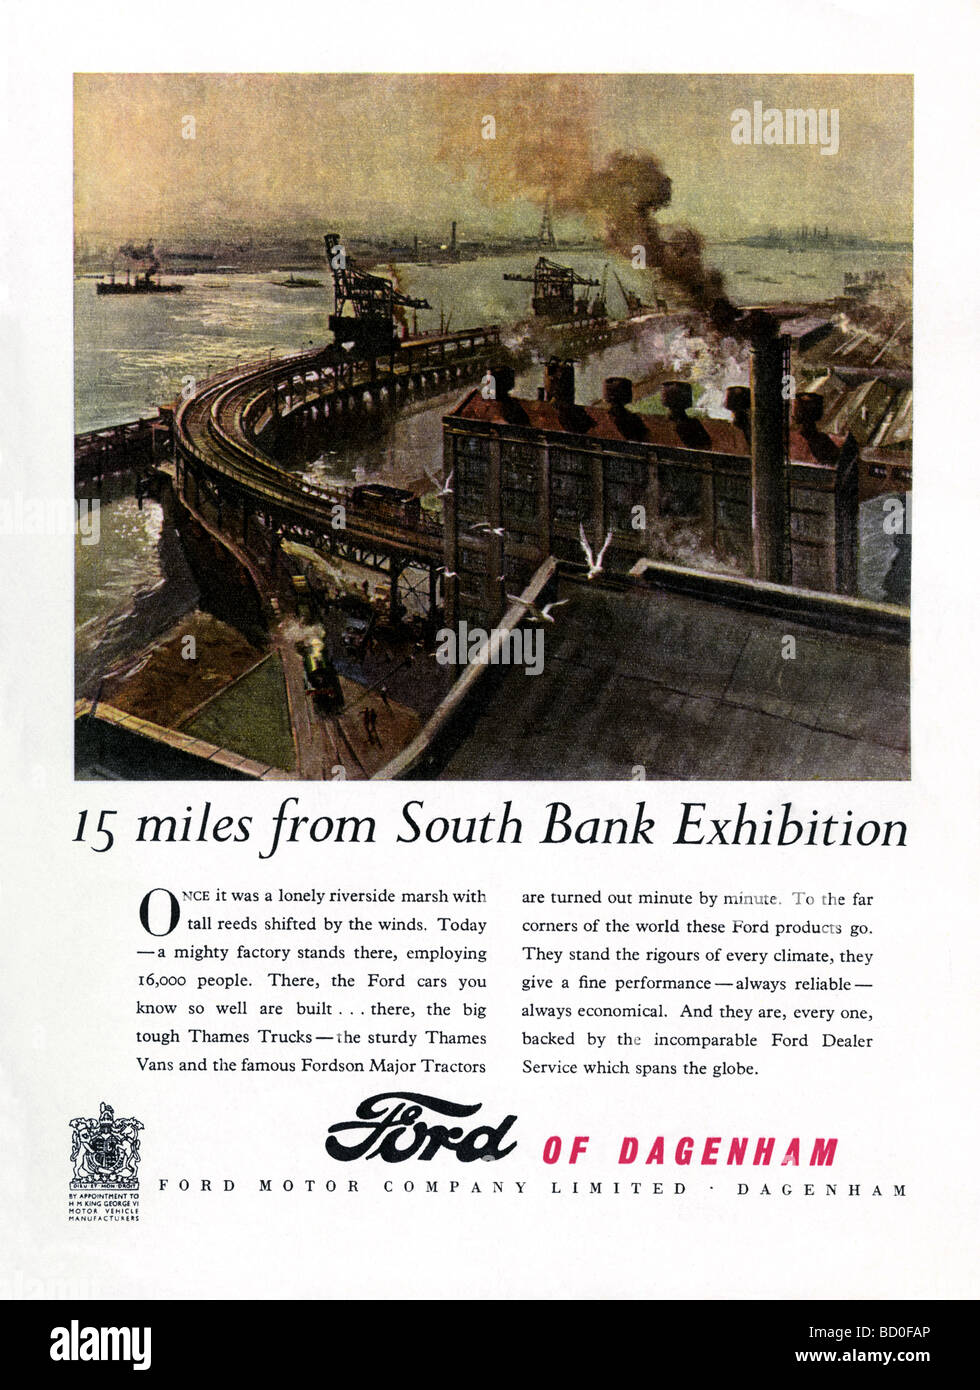 1951 la pubblicità per la Ford Motor Company, Dagenham presentando una illustrazione della fabbrica accanto al Fiume Tamigi Foto Stock